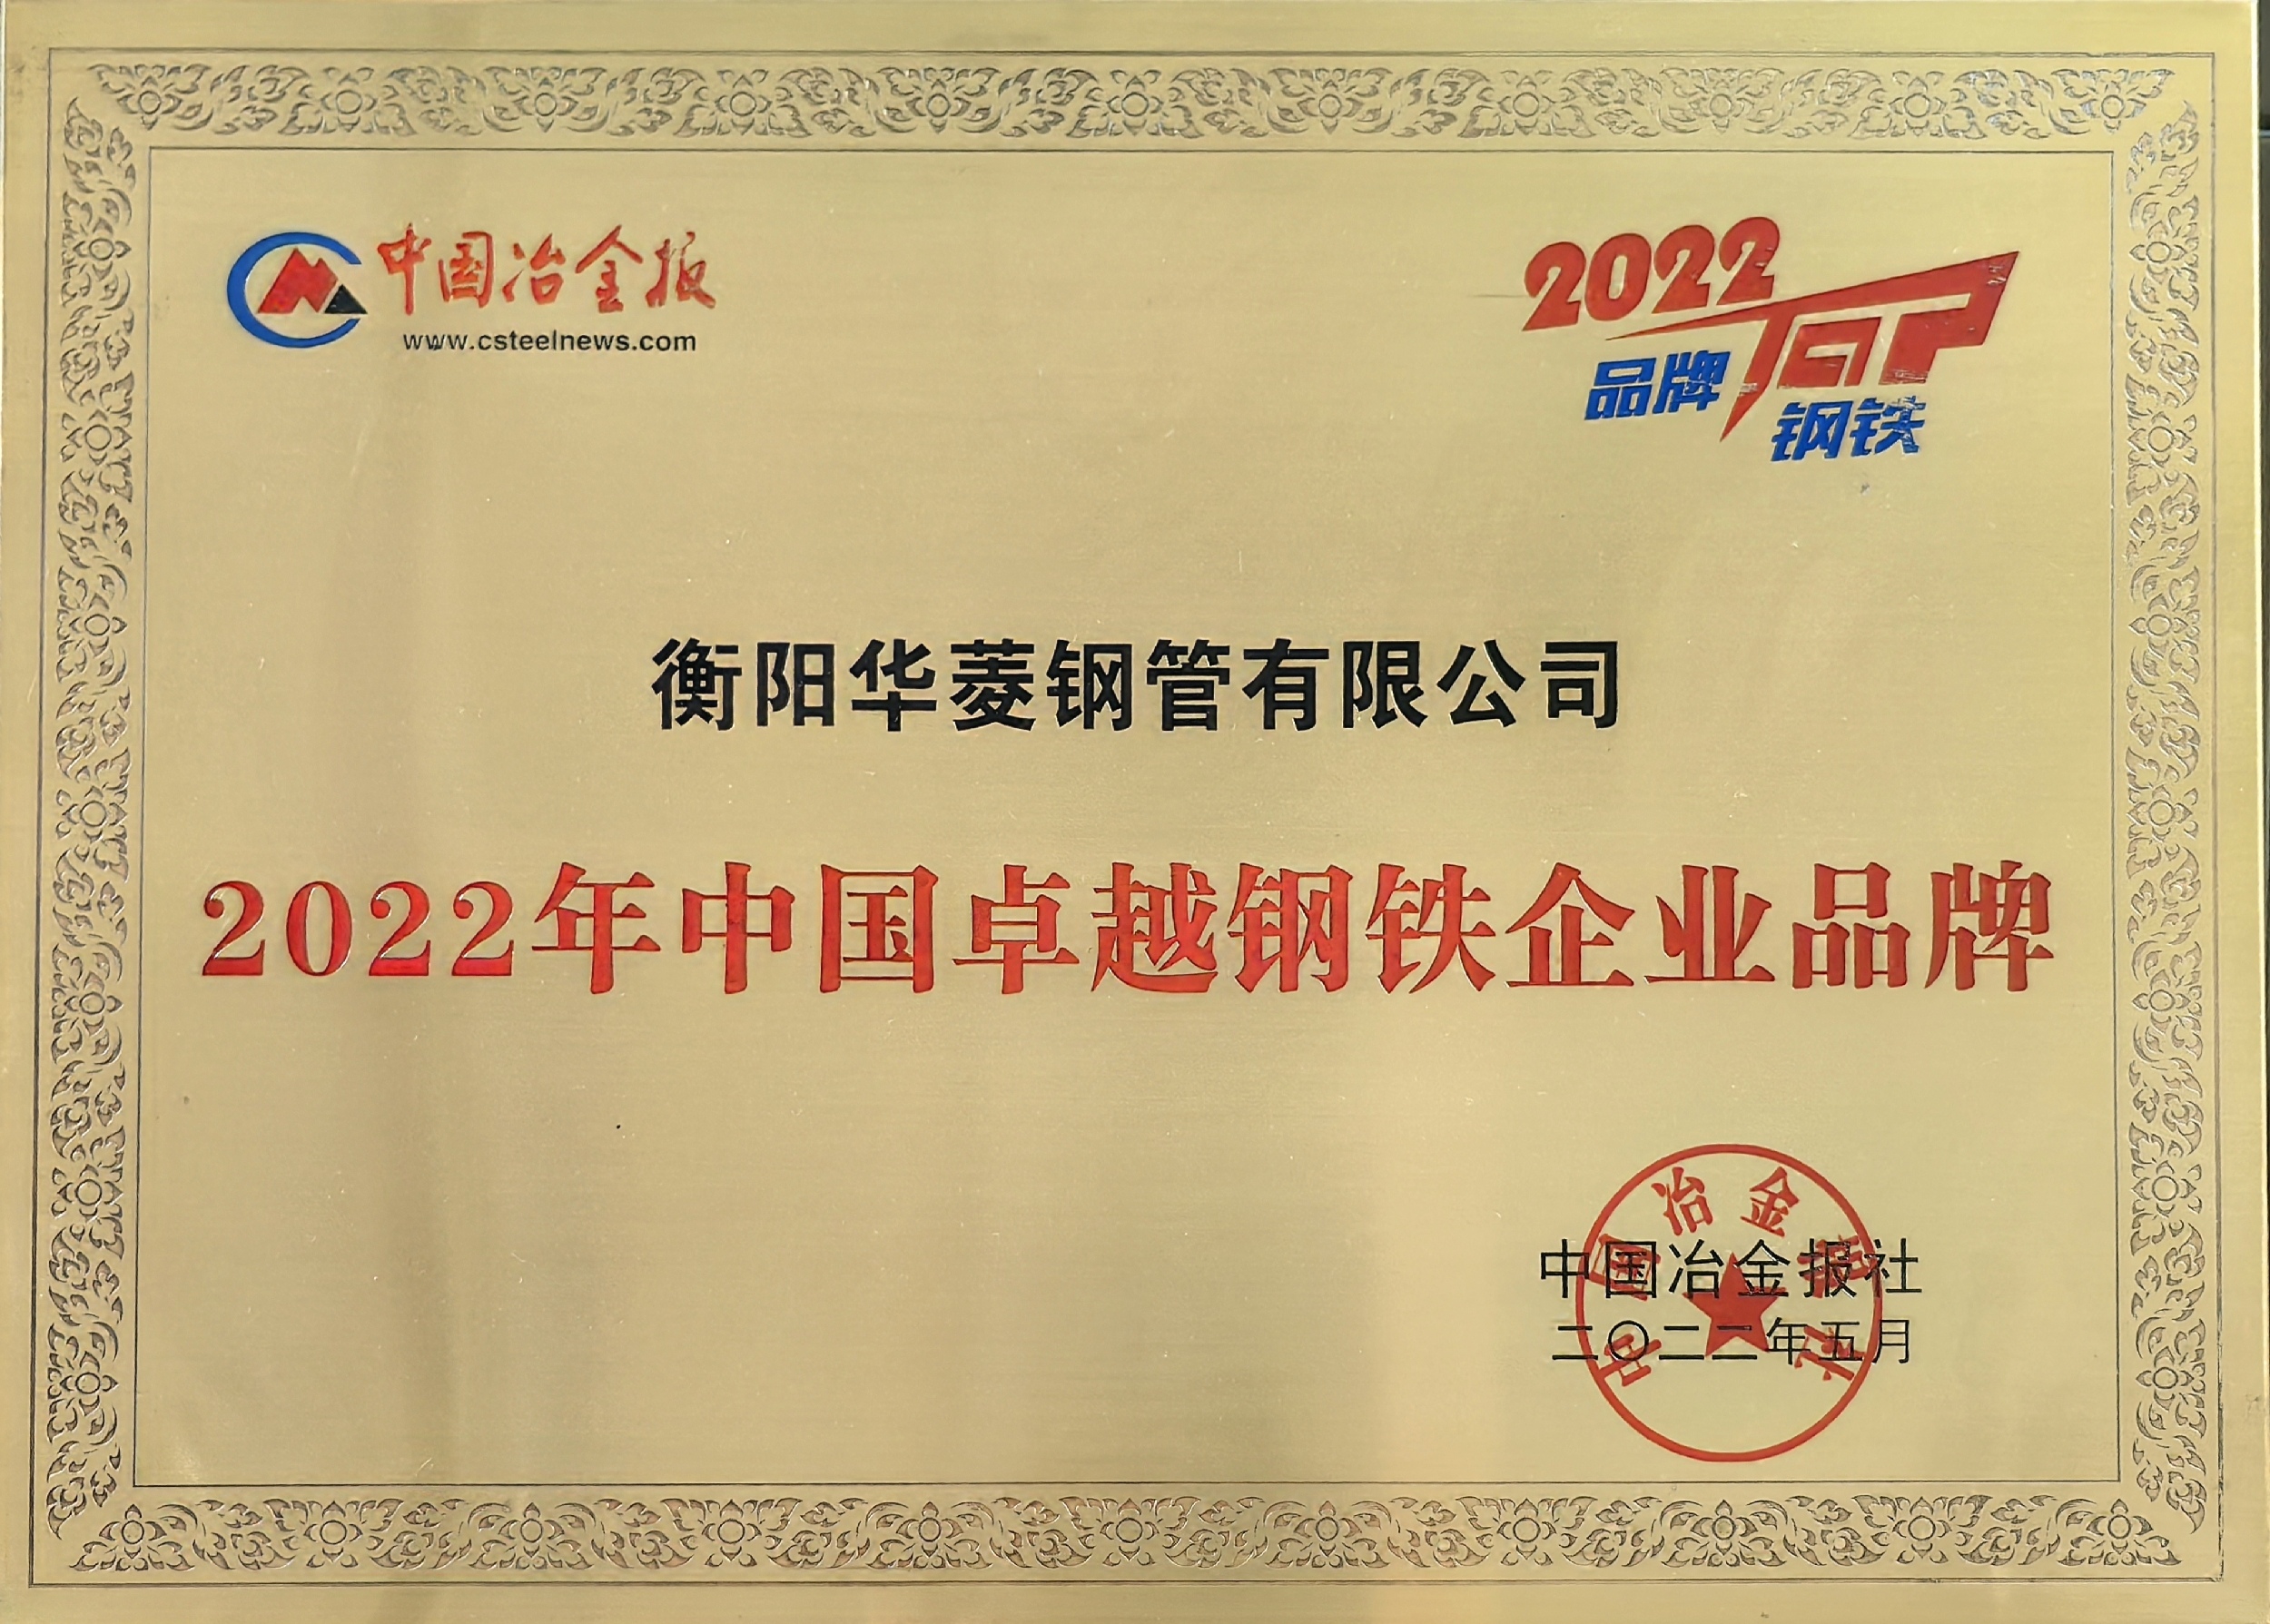 2022年中國卓越鋼鐵企業品牌